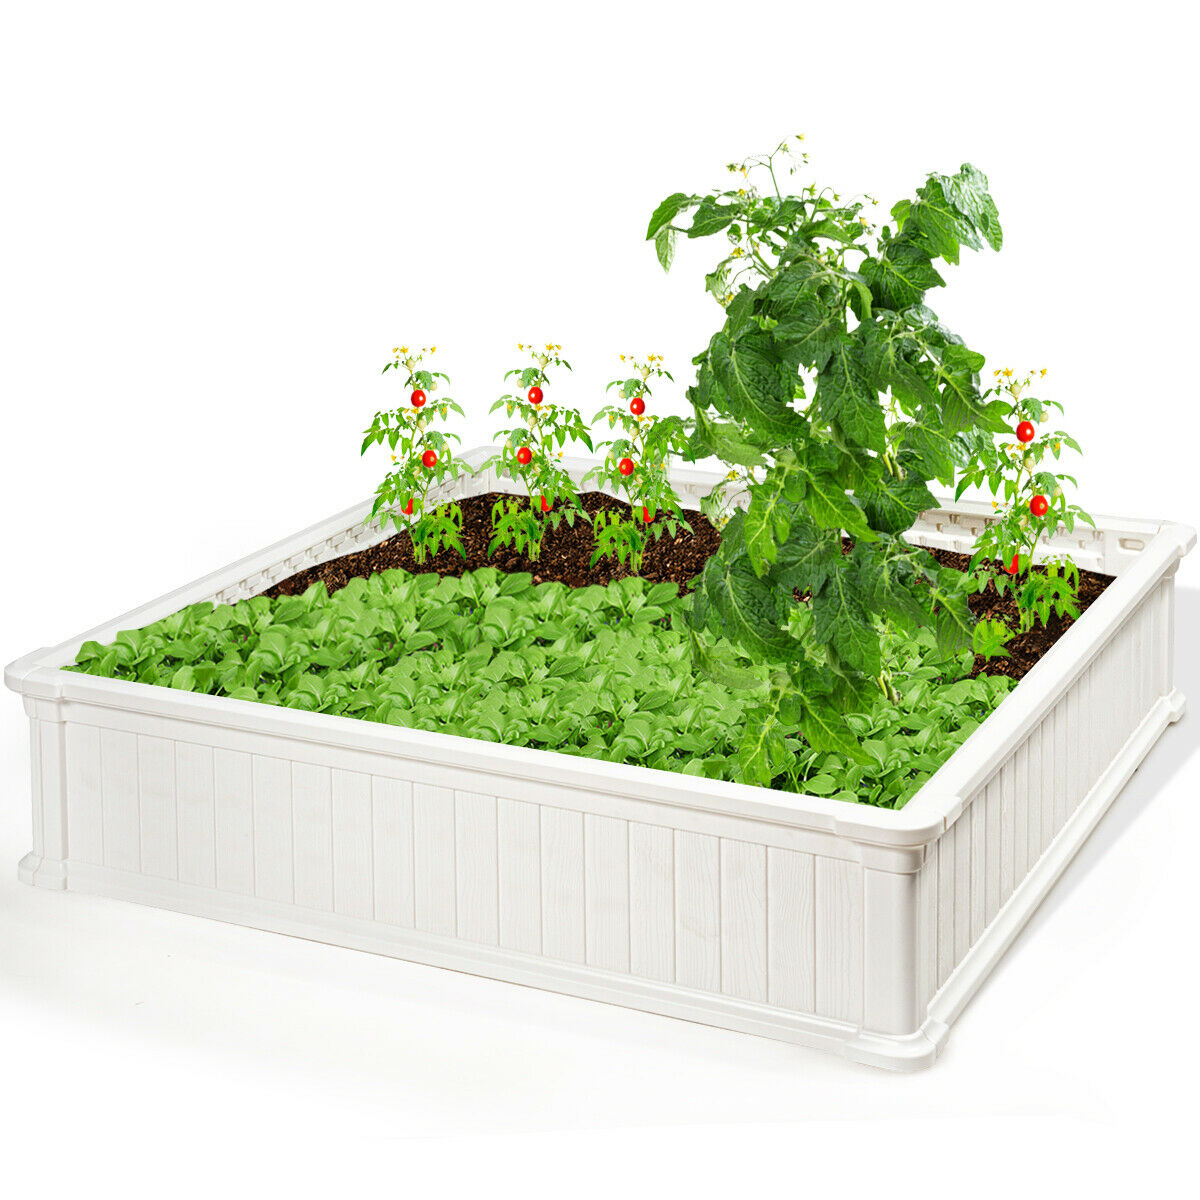 48.5'' Raised Garden Bed Square Plant Box Planter Flower Vegetable Brown/White - White